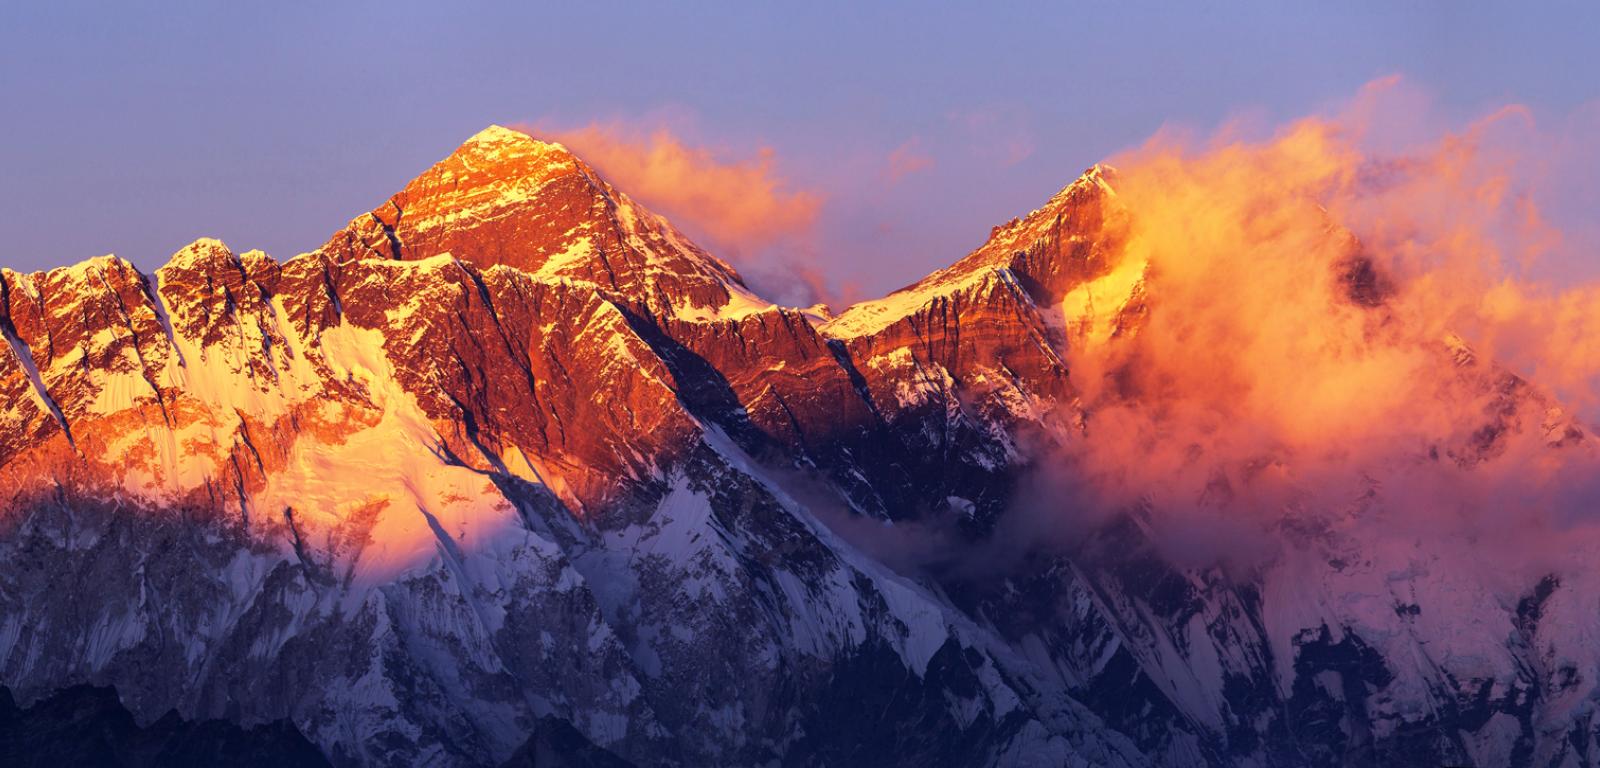 Przełęcz Południowa jest położona pomiędzy Mount Everest i Lhotse – pierwszym i czwartym co do wysokości szczytem Ziemi.